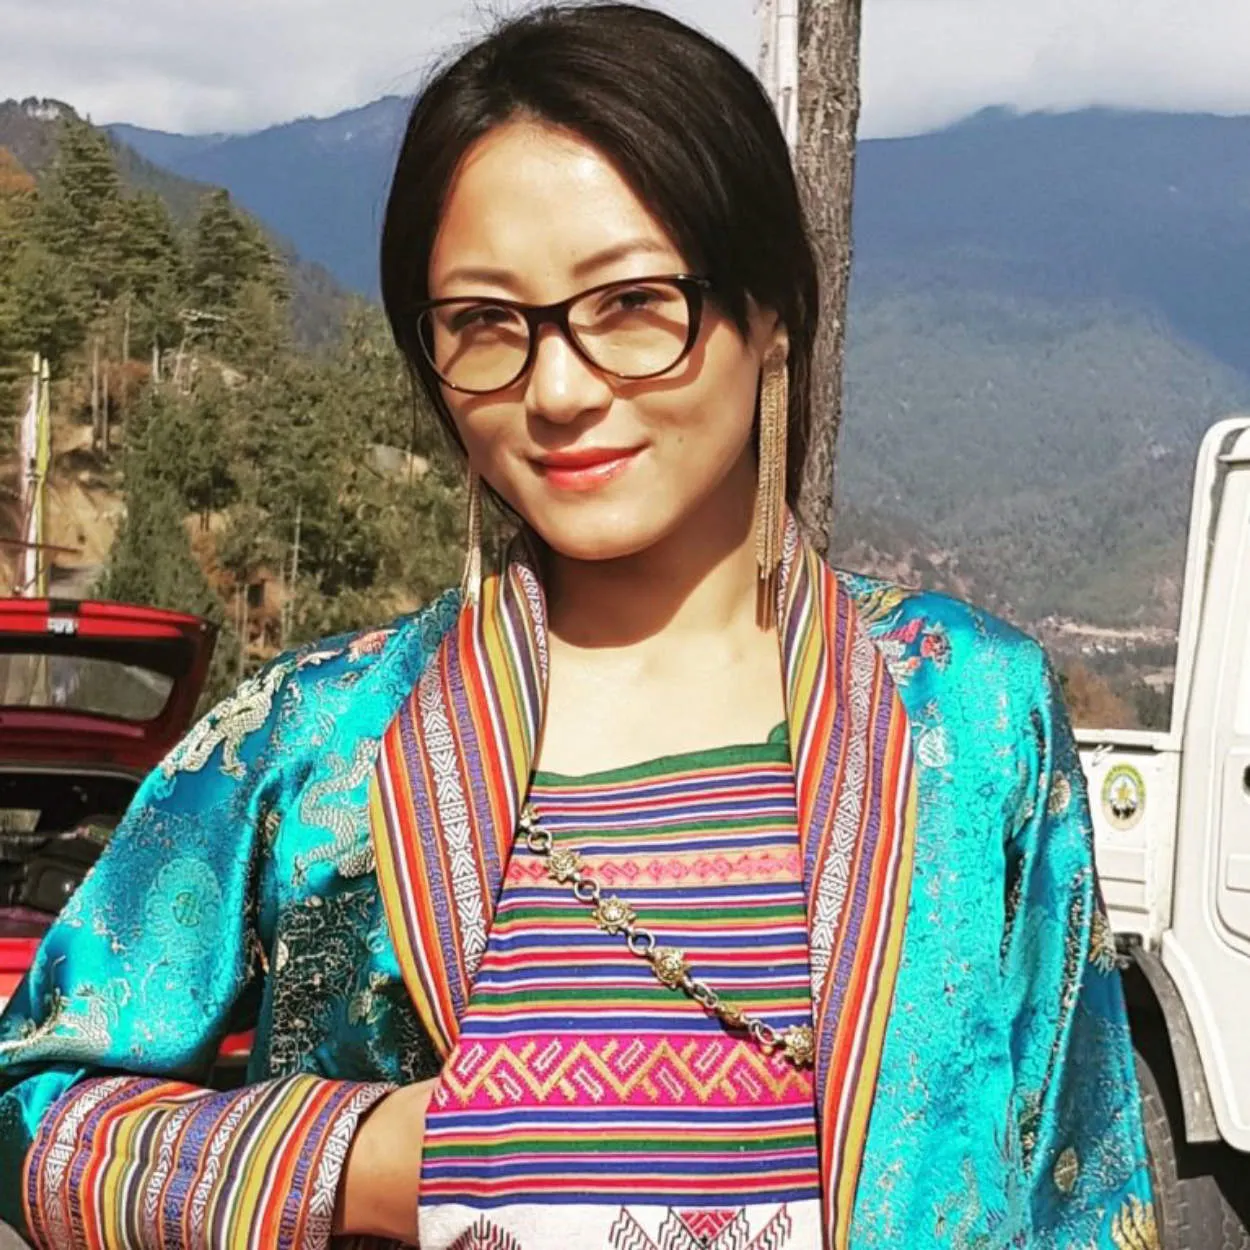 Bhutan beautiful woman or selebgram